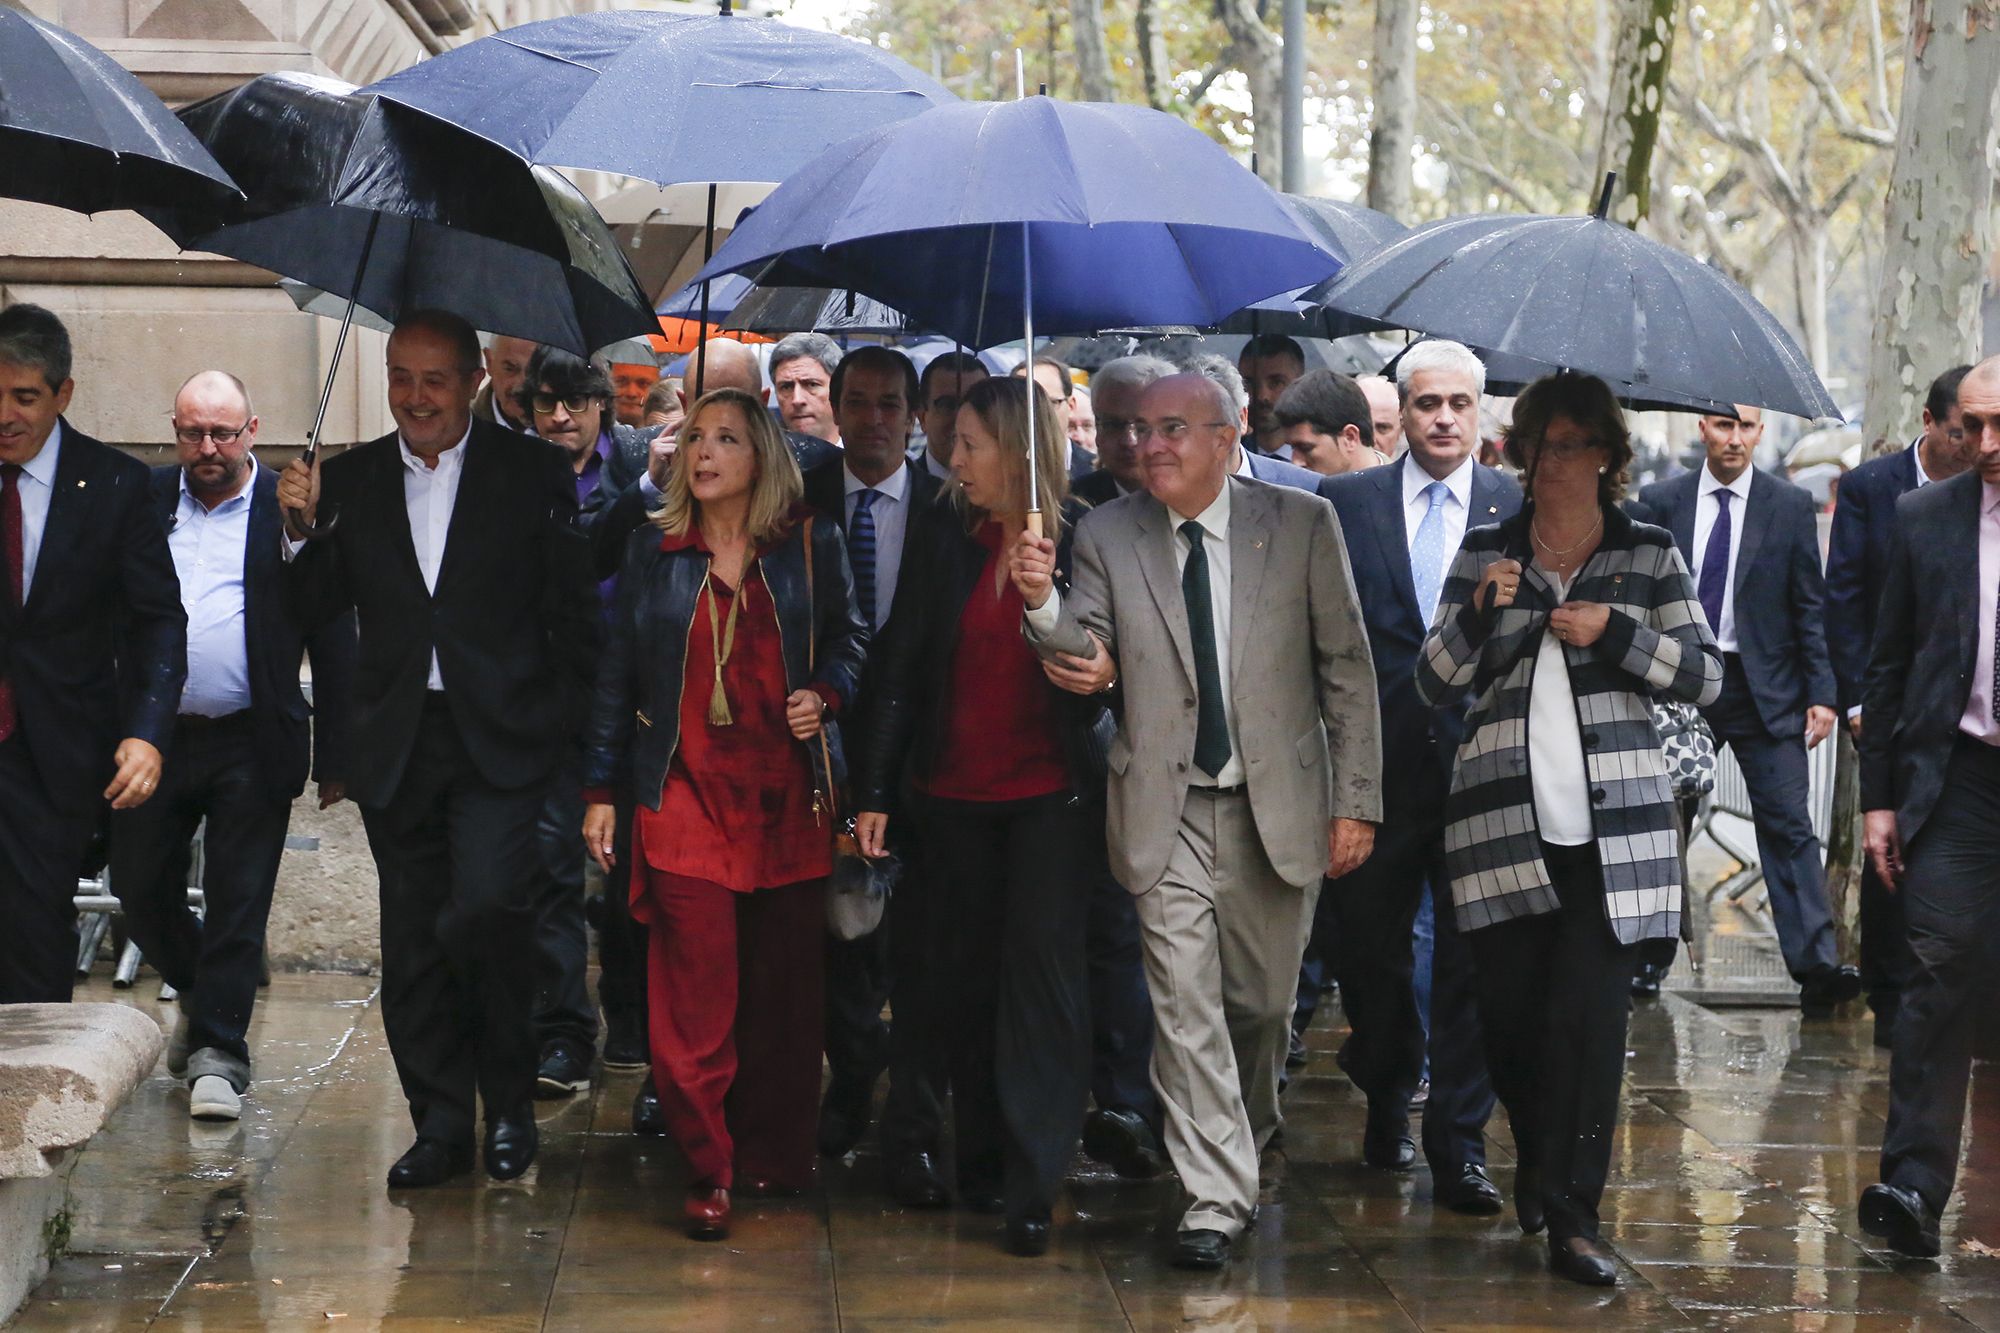 L'exvicepresidenta Ortega dirigint-se al tribunal amb la seva Succesora, Neus Munté, i altres consellers / CARLES BADIA